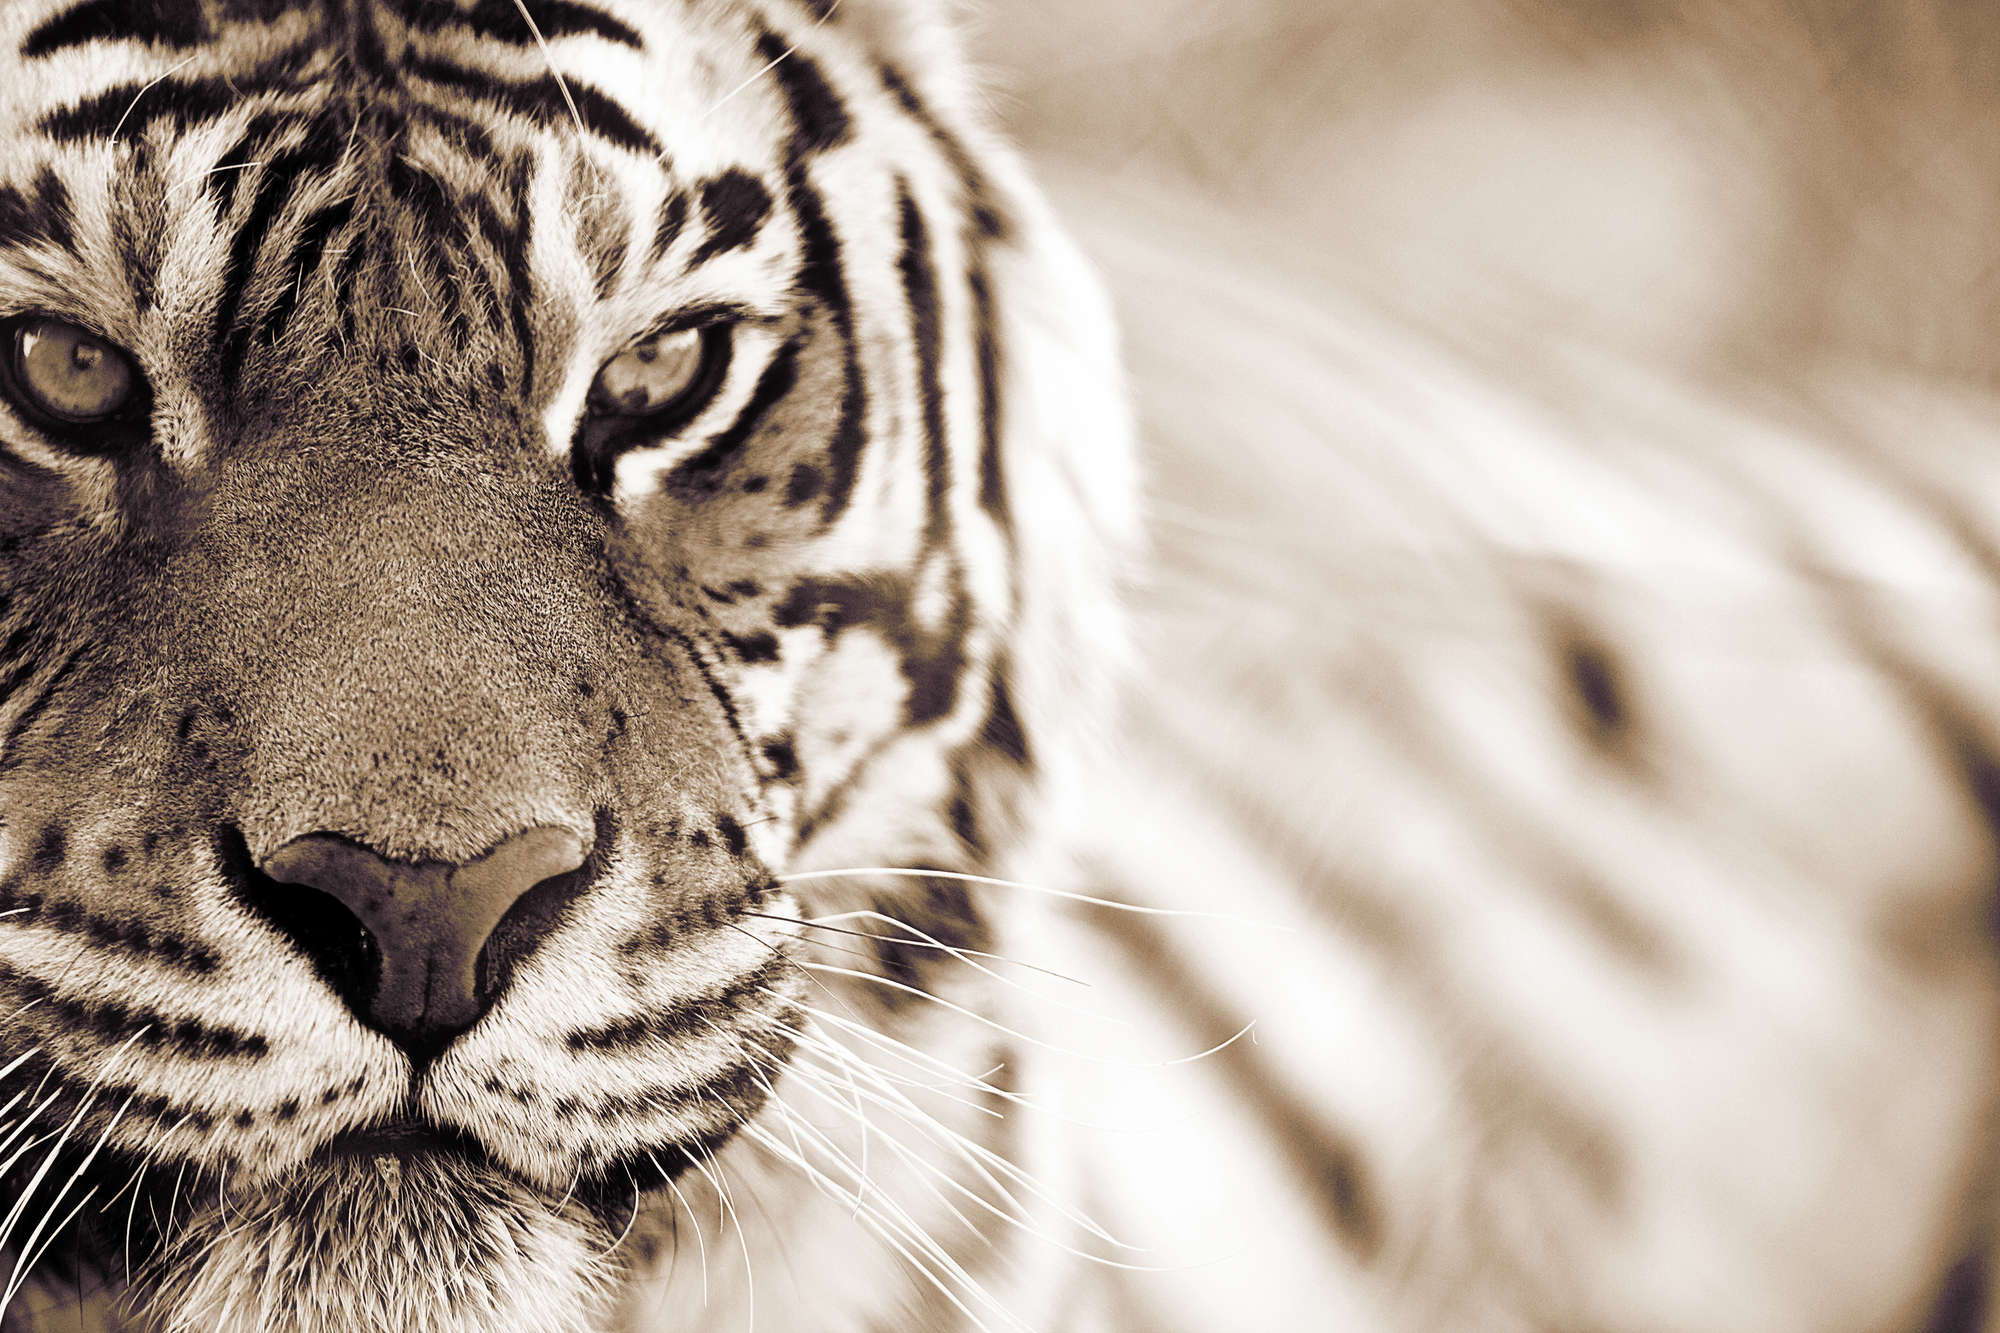             Tiger Fototapete Nahaufnahme im Freien auf Strukturvlies
        